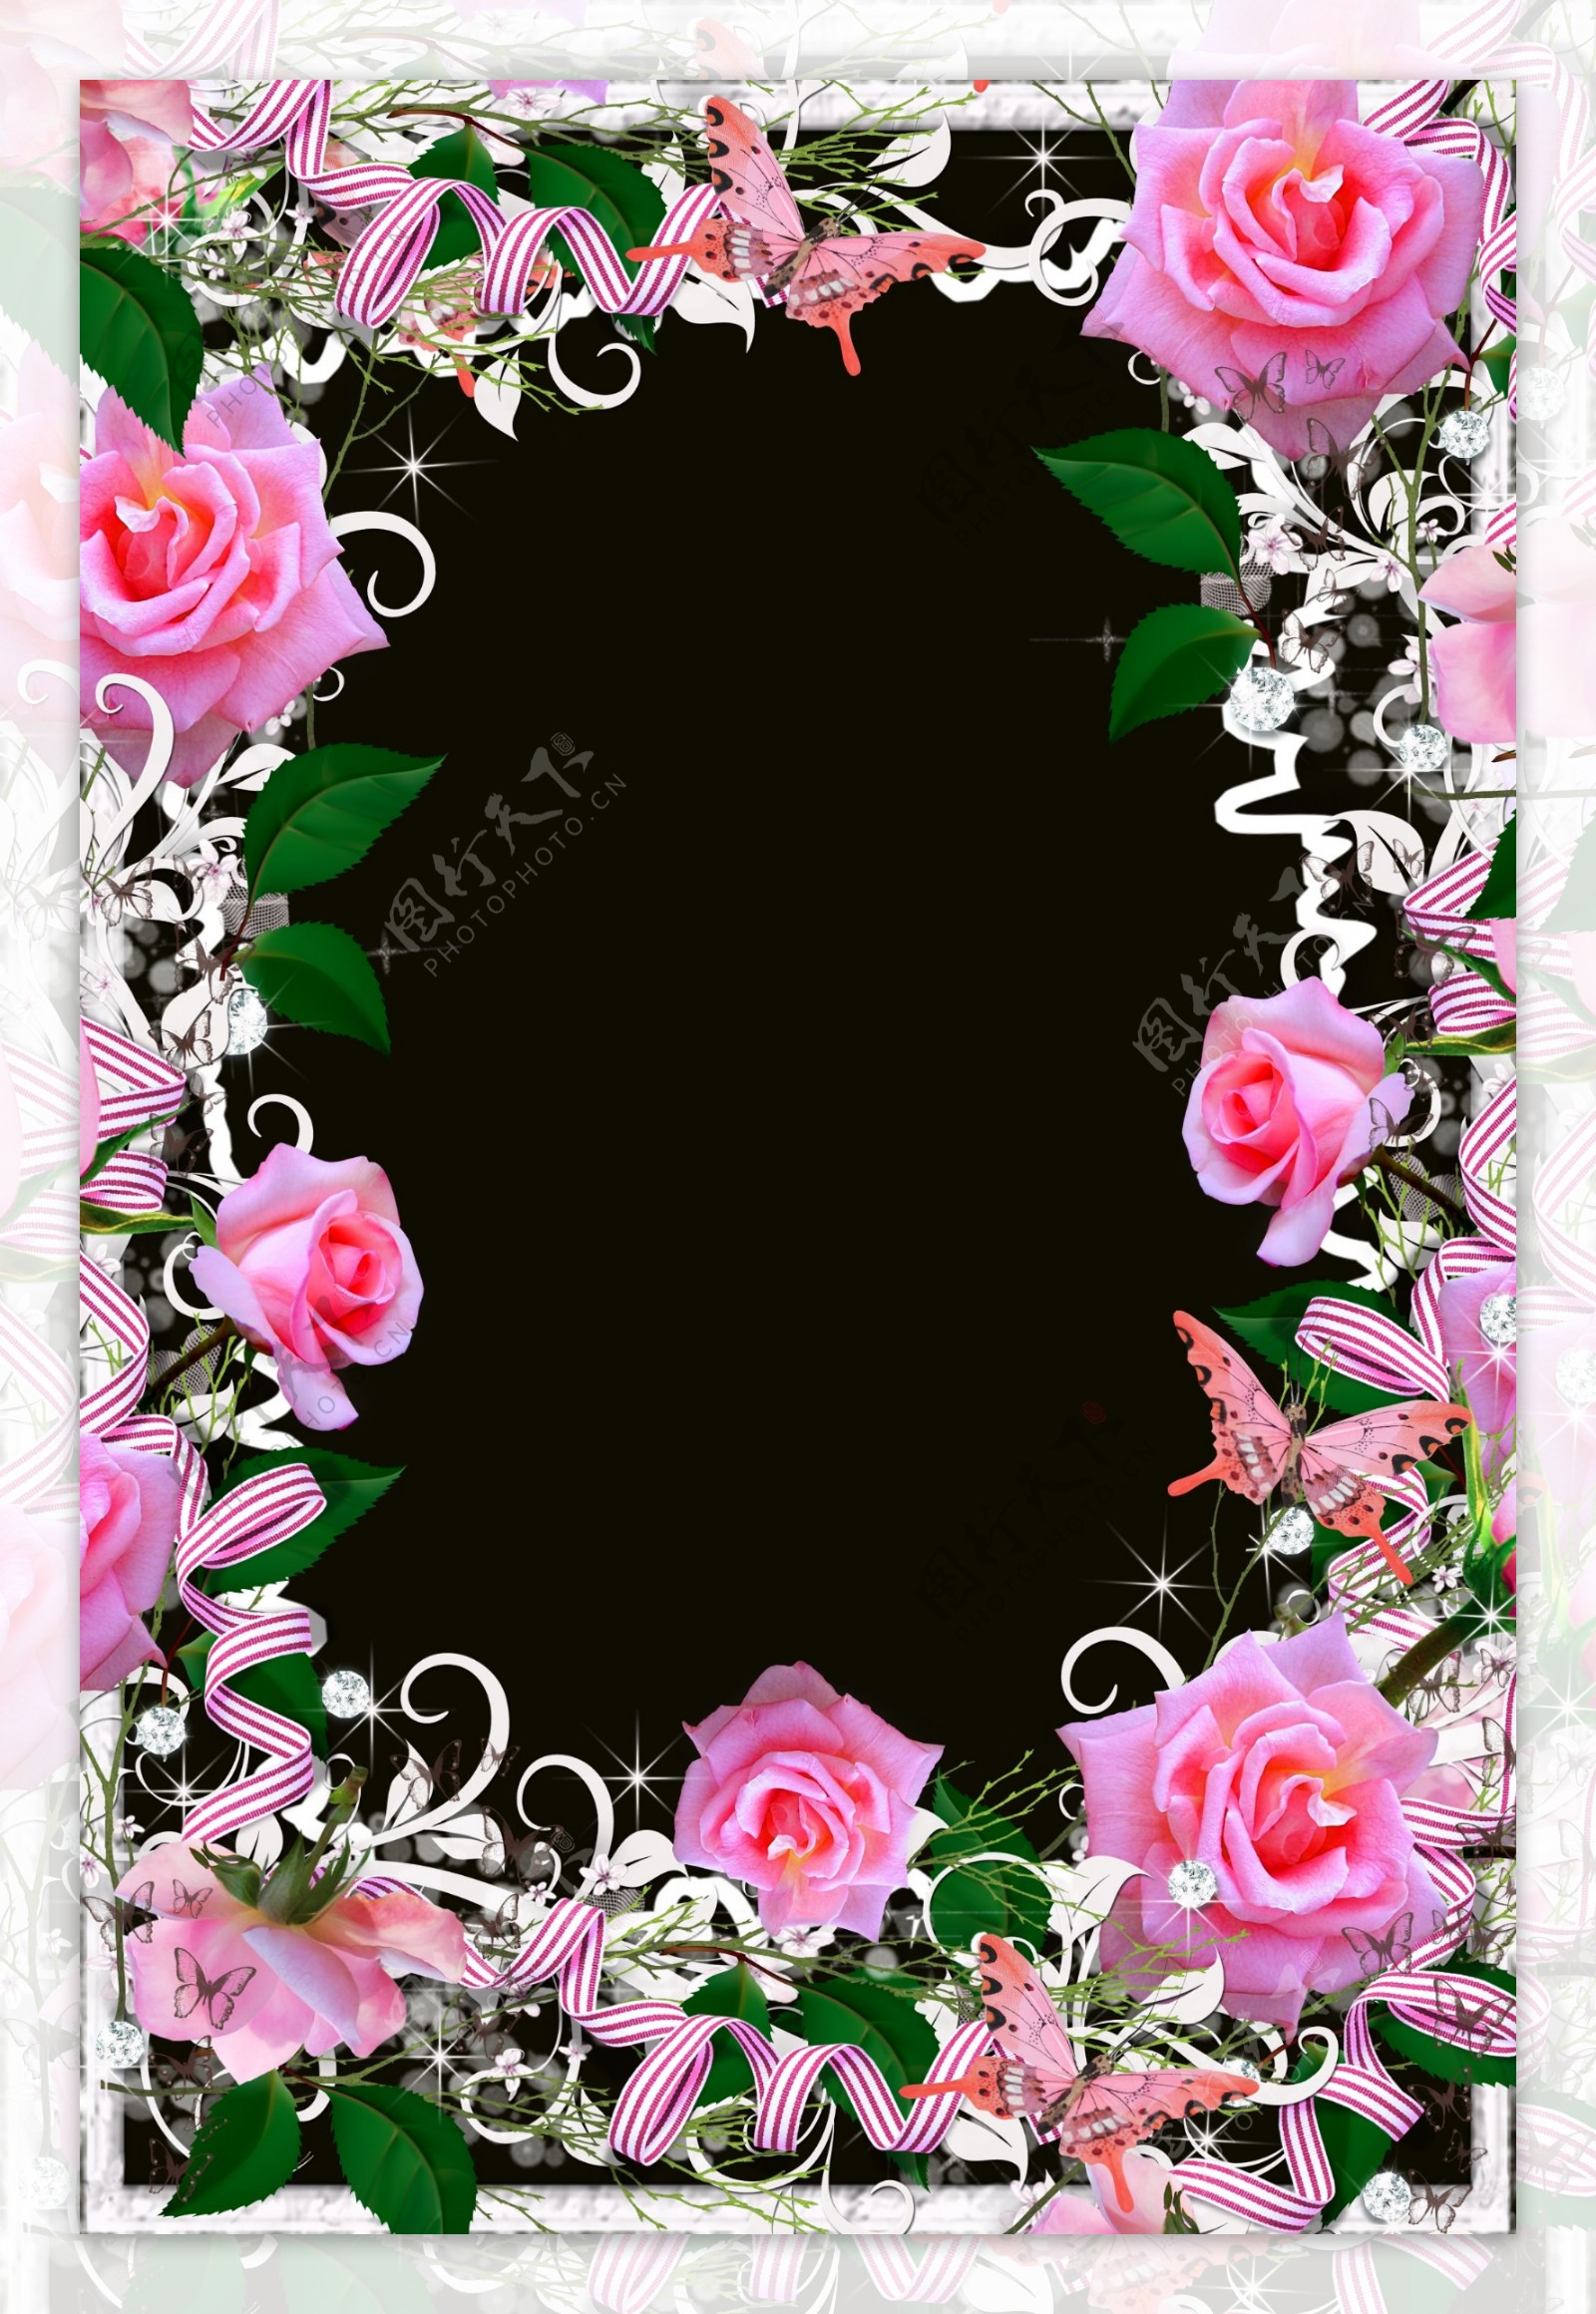 花卉背景模板图片